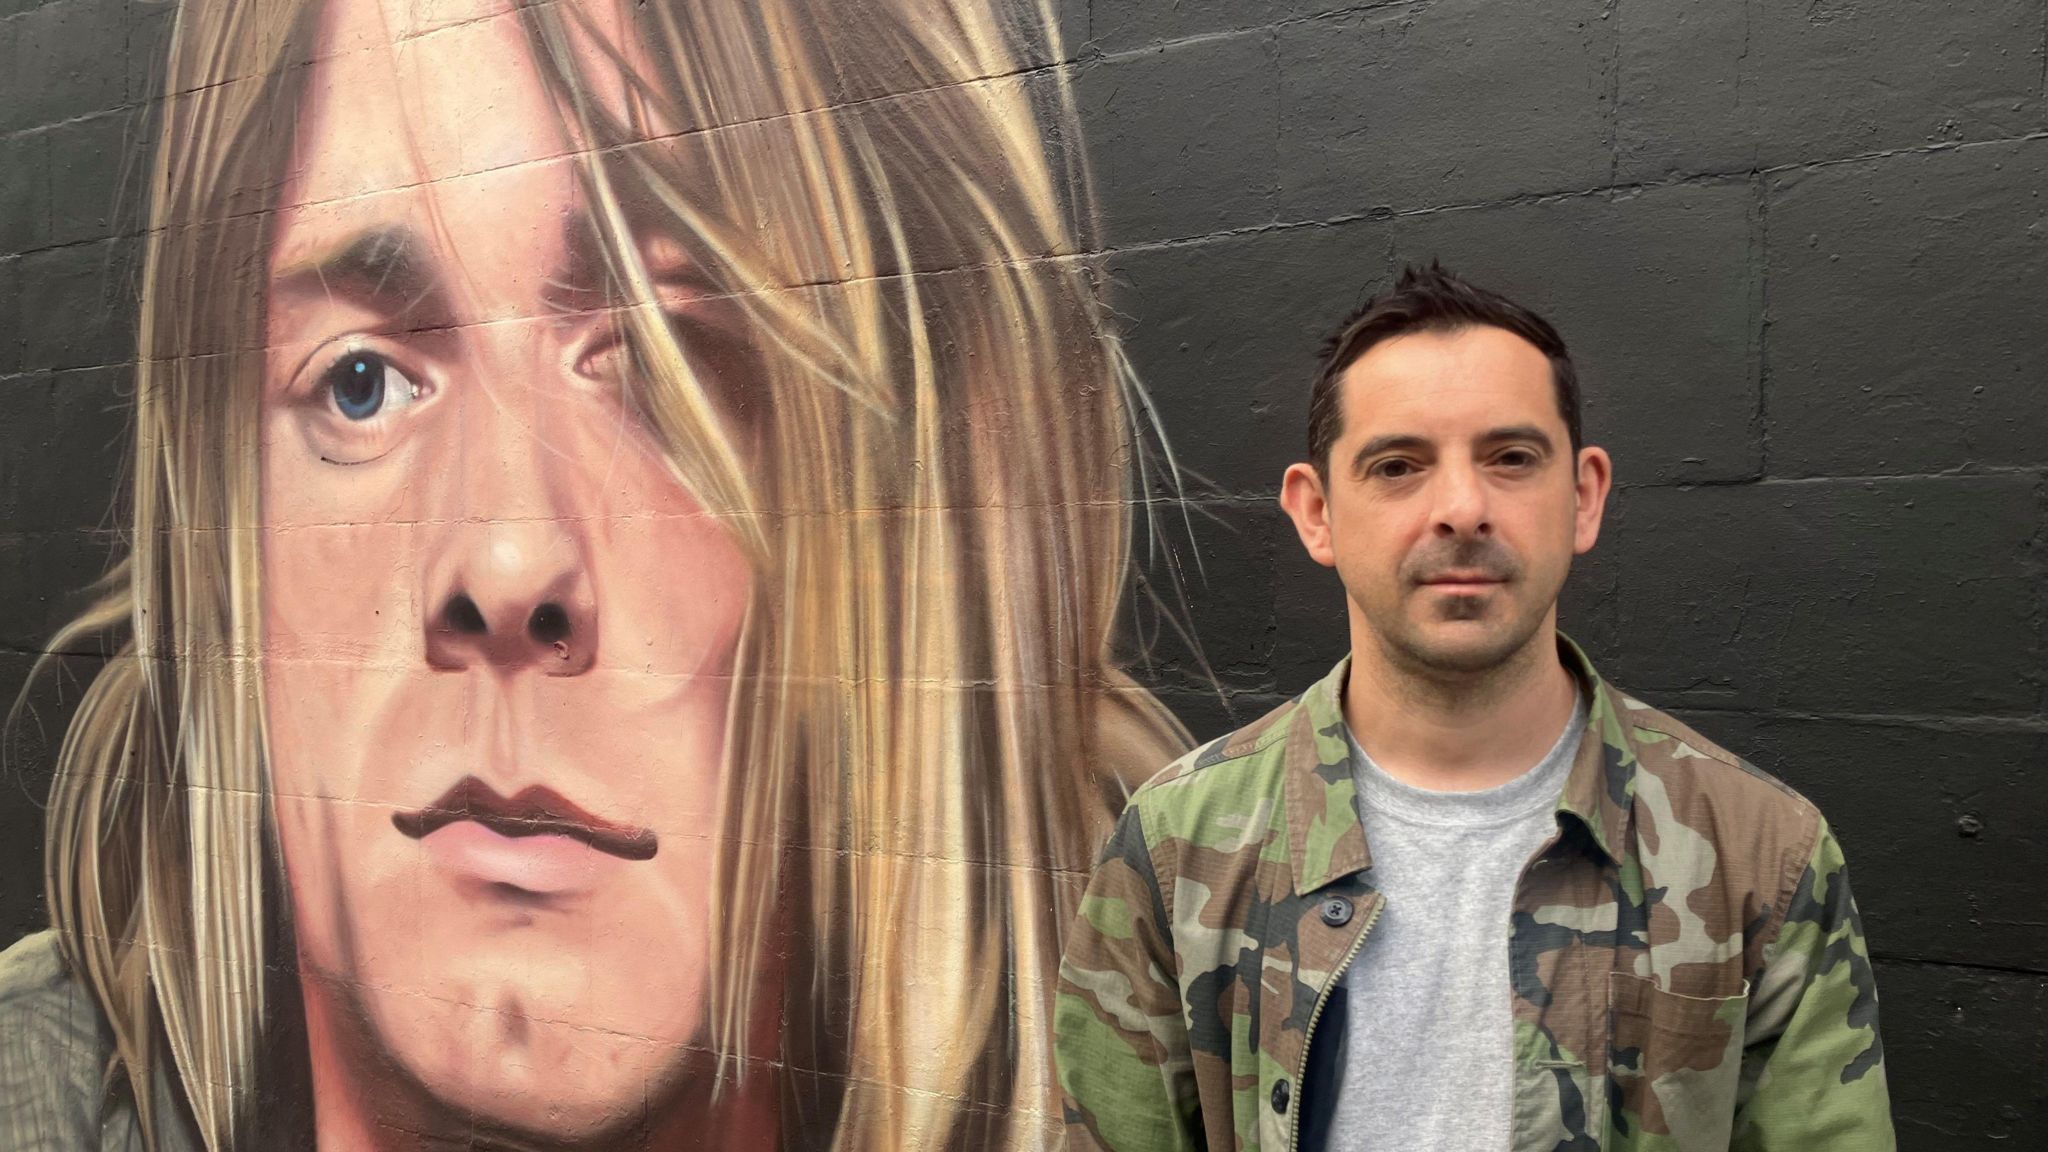 Atheer Al-Salim stood next to a mural of Kurt Cobain